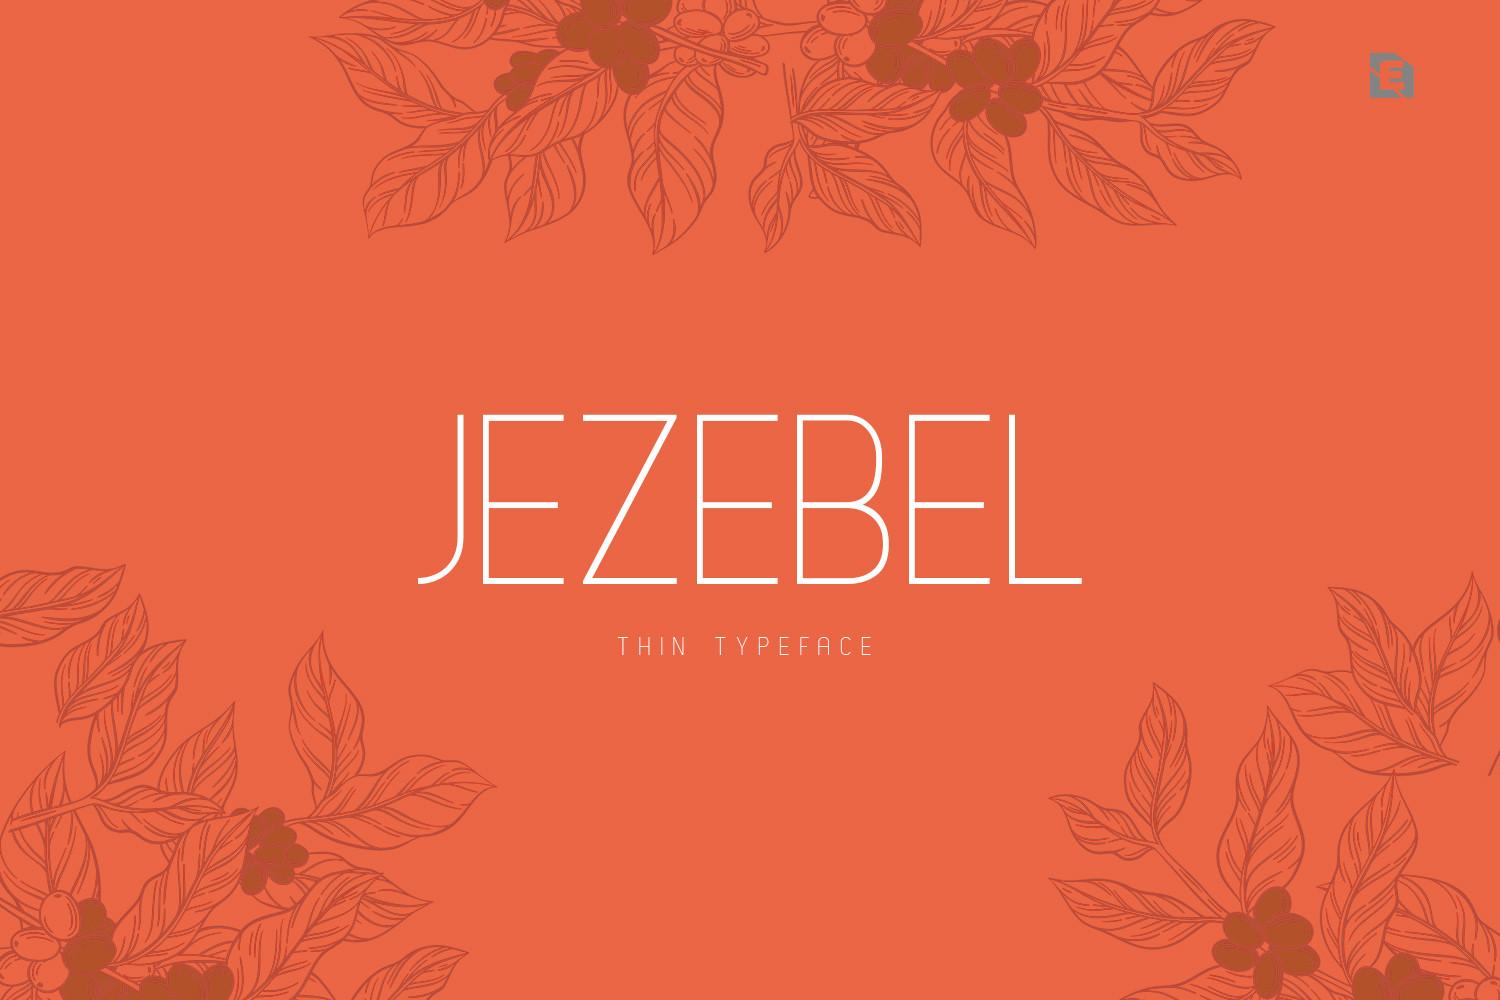 Jezebel Font